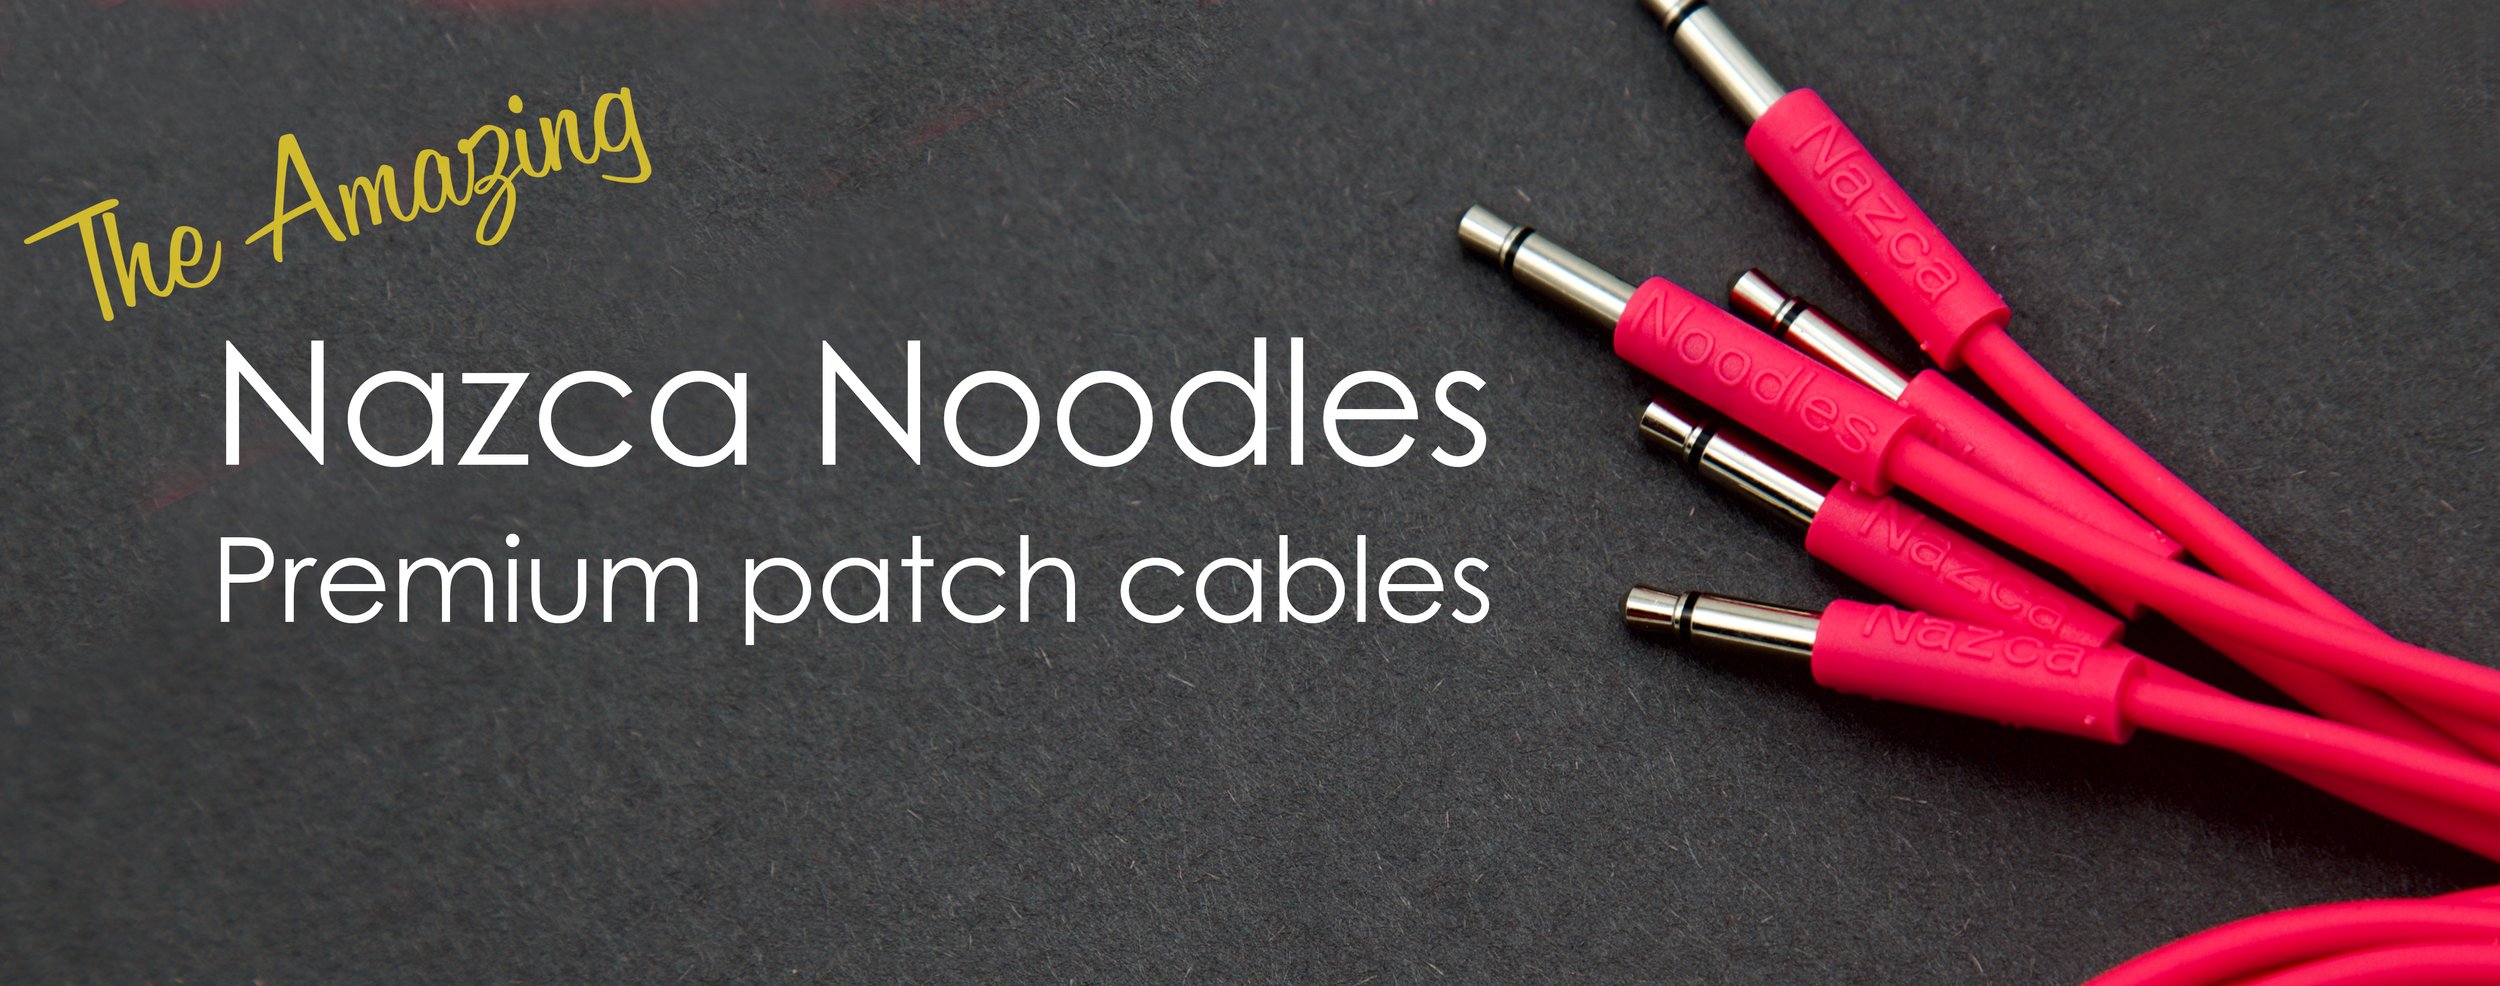 Nazca Noodles Patch Cables